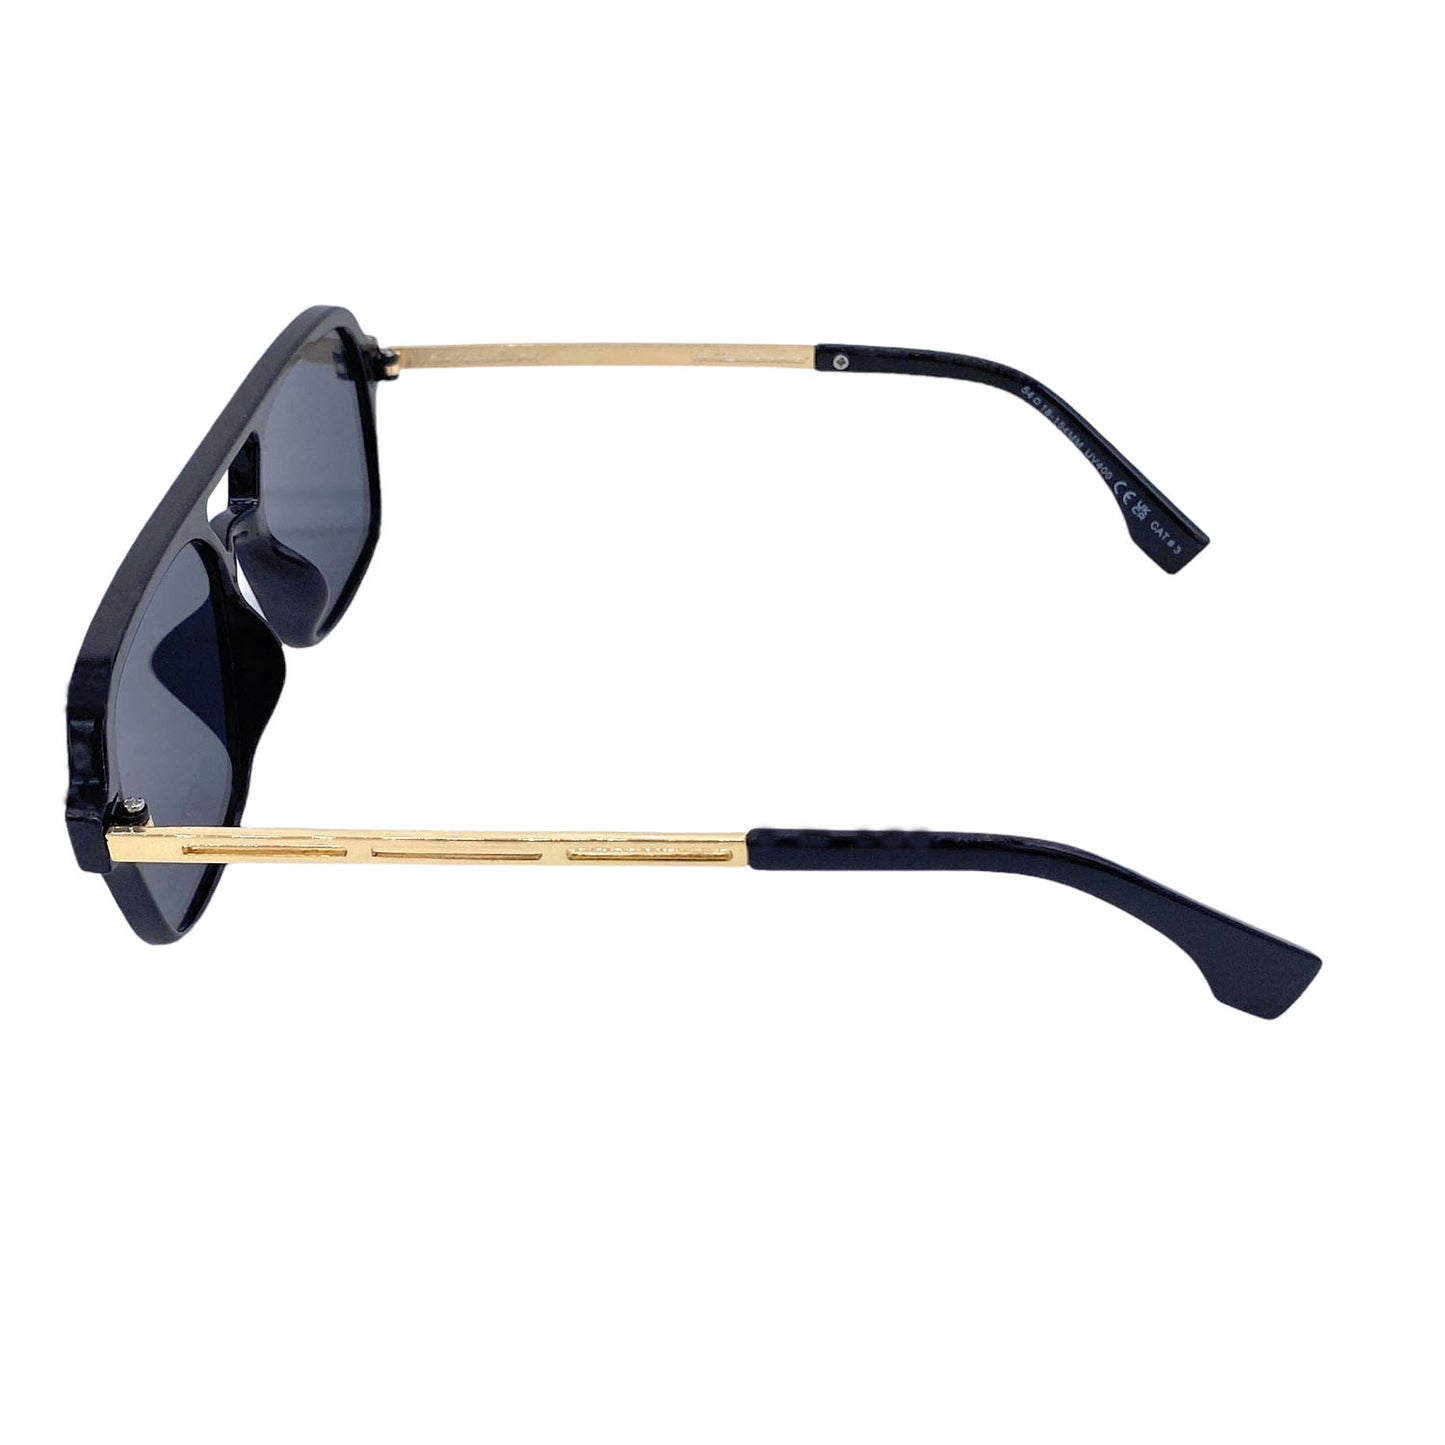 Empire Cove Aviator Sunglasses Retro Stylish Double Bridge UV Protection Driving